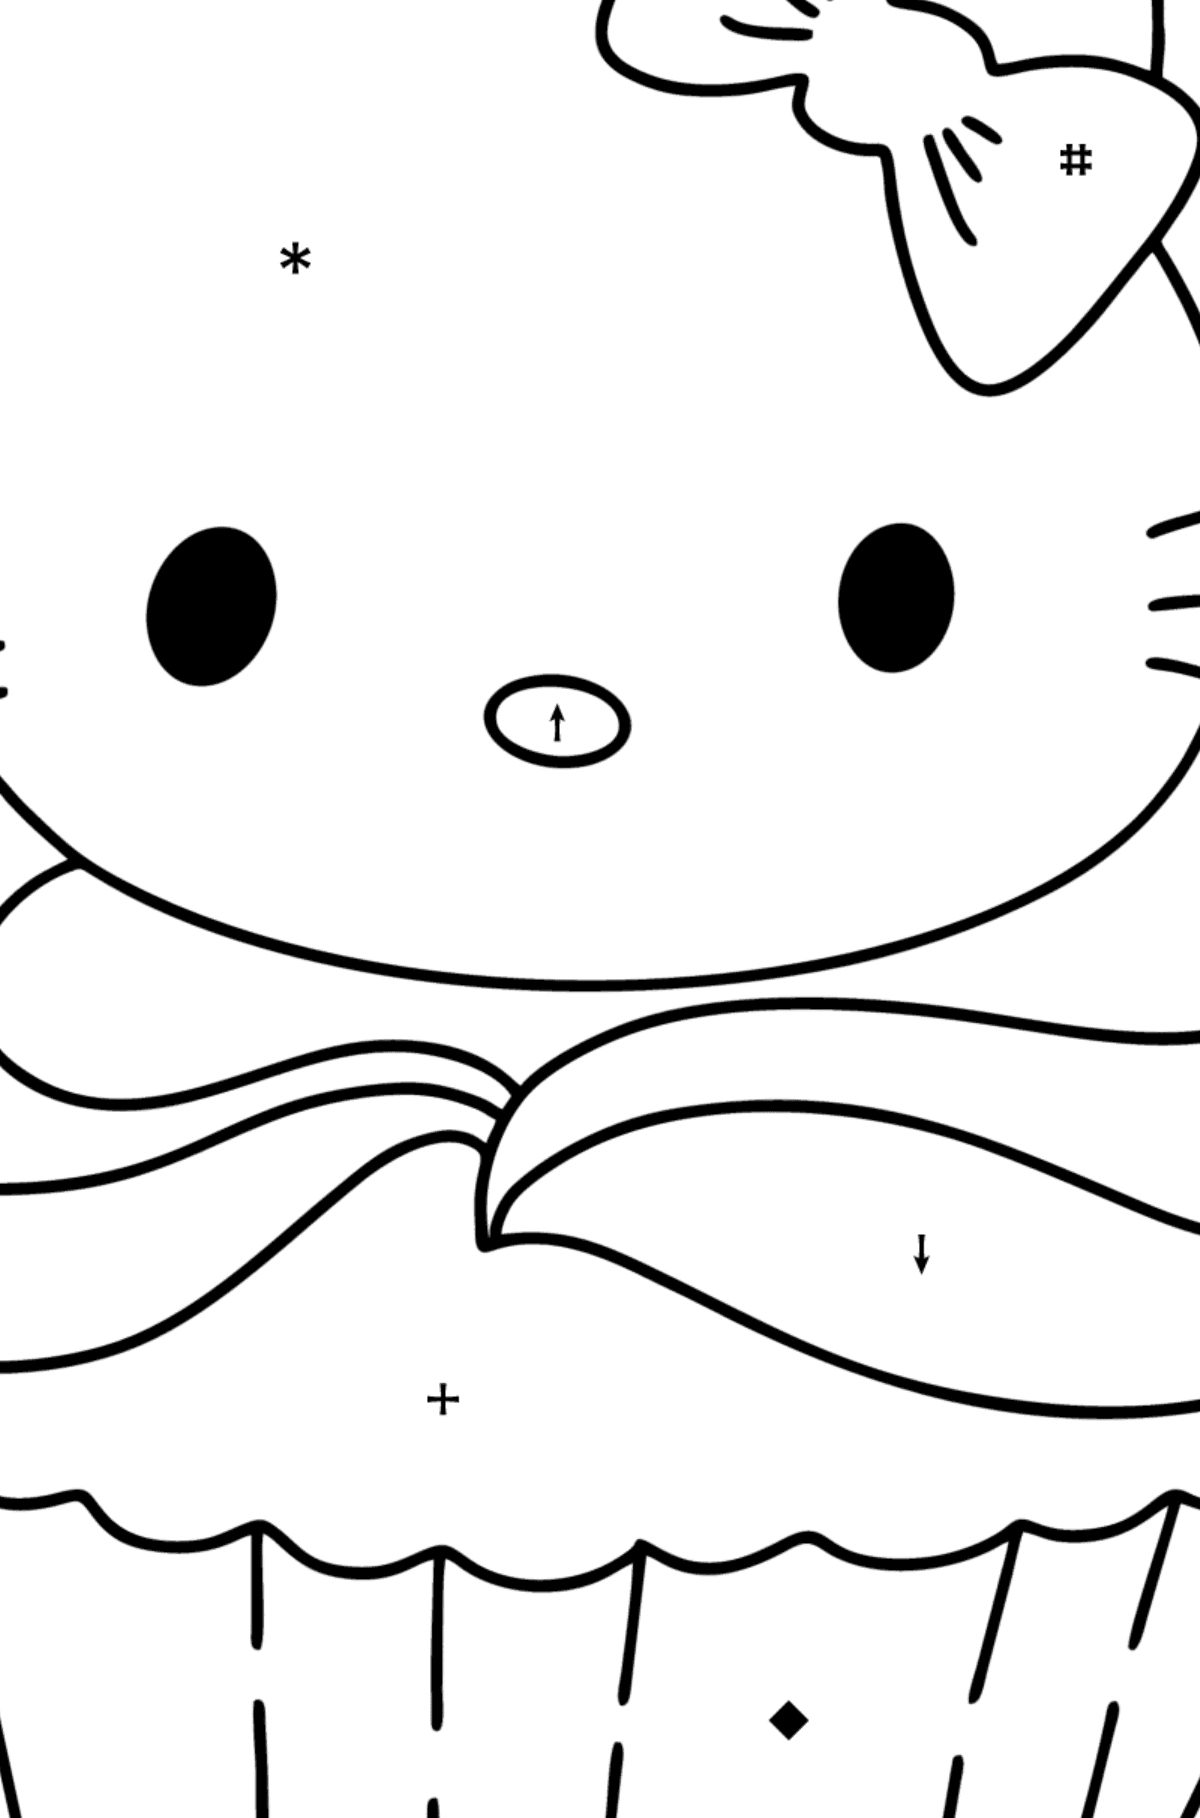 Boyama sayfası Hello Kitty bisküvi - Sembollerle Boyama çocuklar için